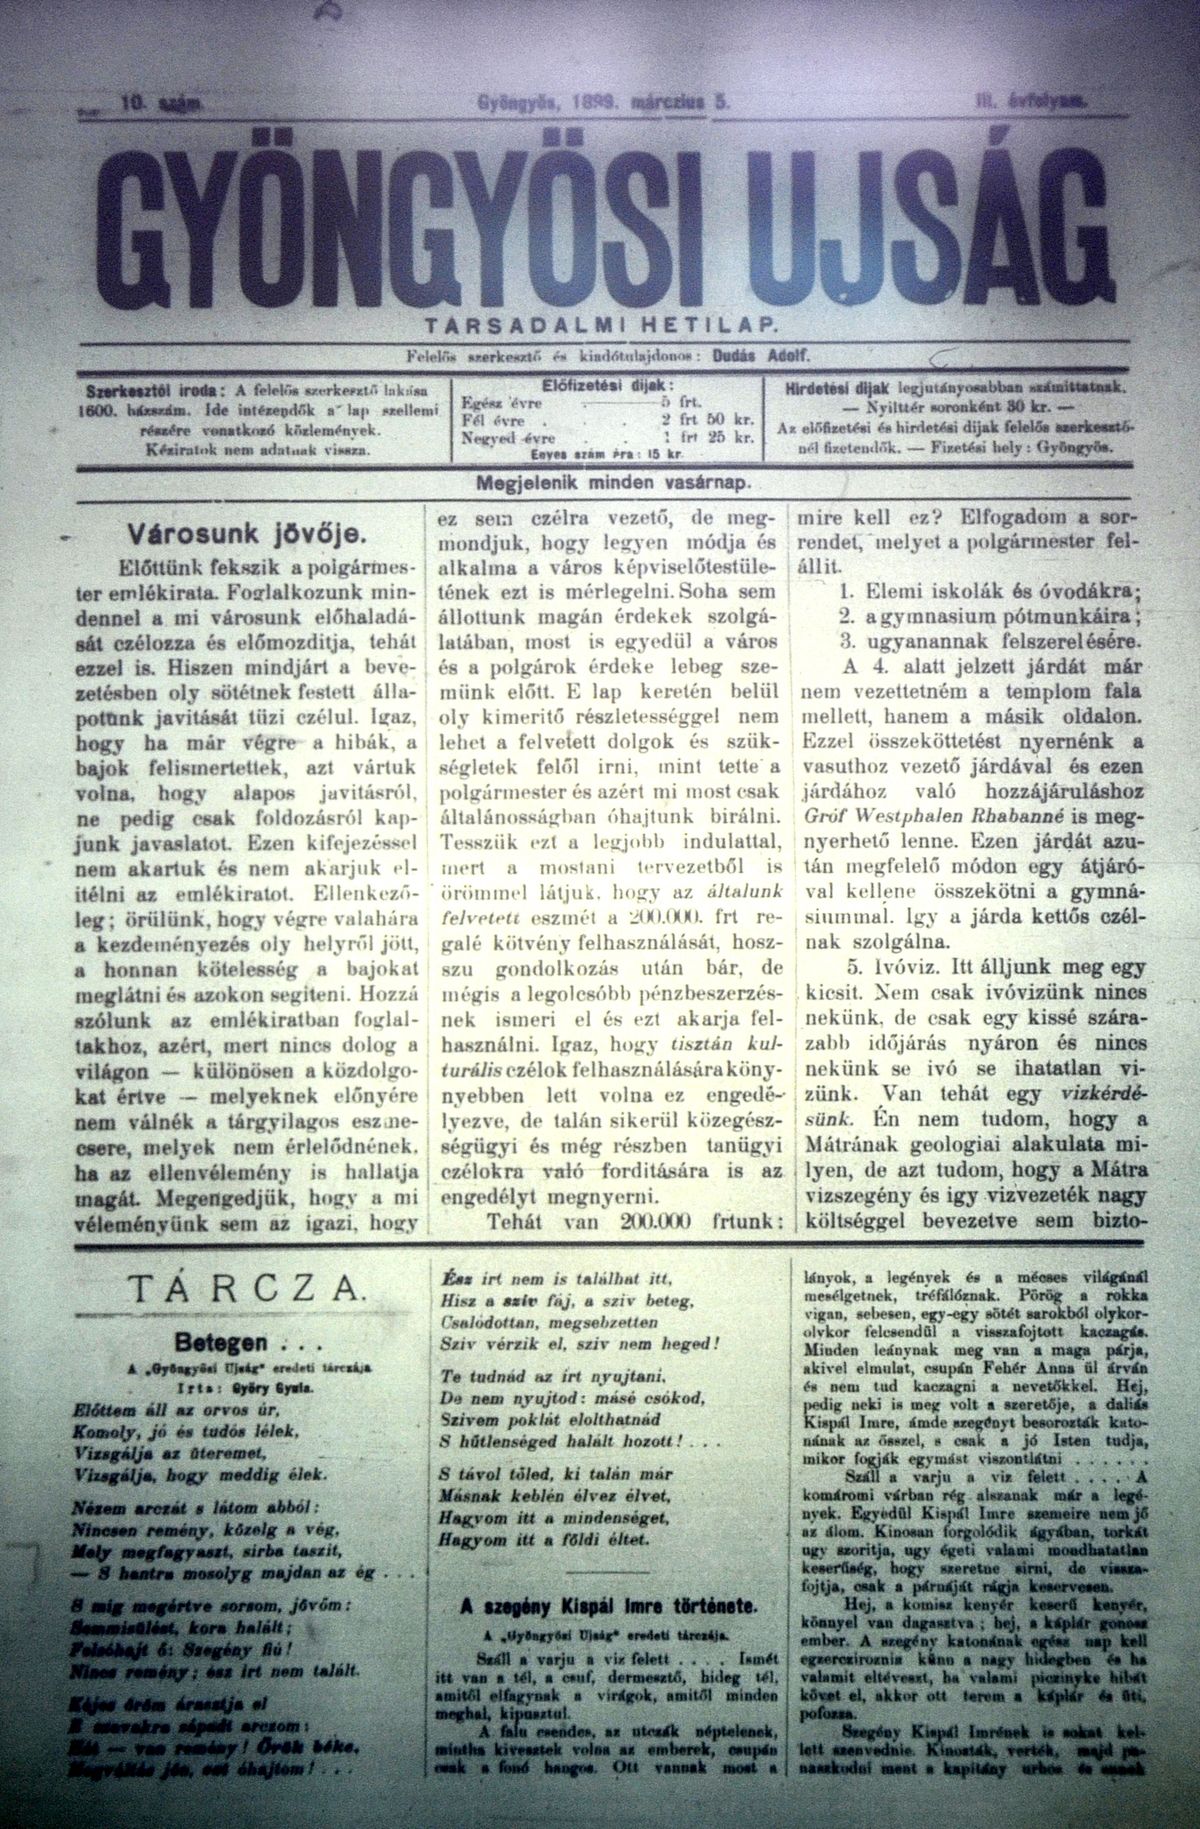 A dudás Adolf által szerkesztett társadalmi hetilap vasárnaponként jelent meg

